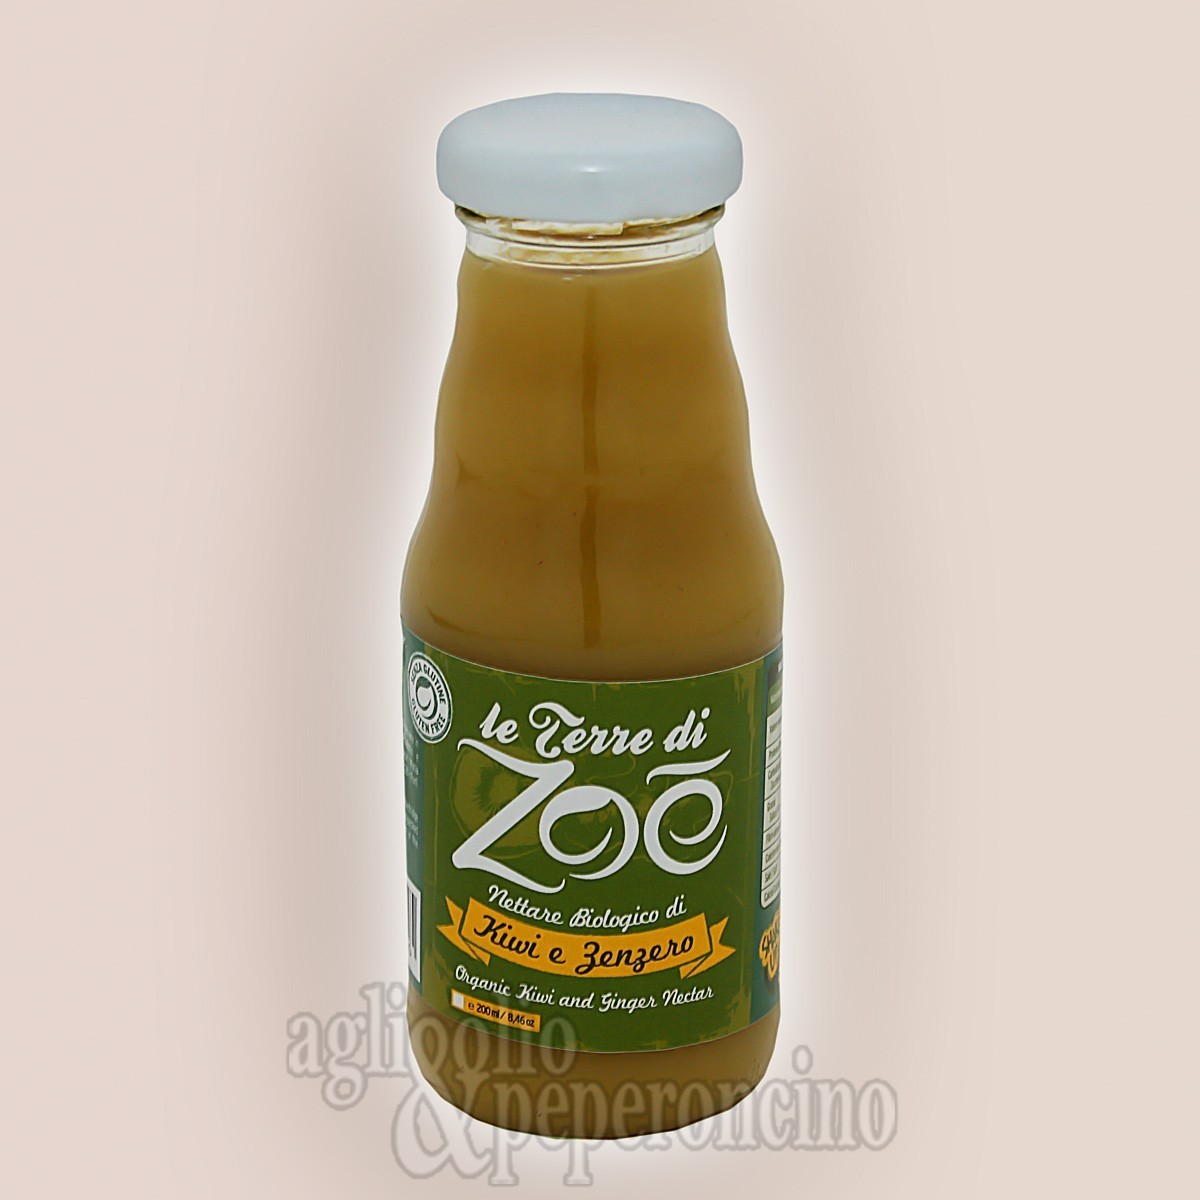 Nettare biologico di kiwi e zenzero - In bottiglietta da 200ml - Le Terre di Zoè